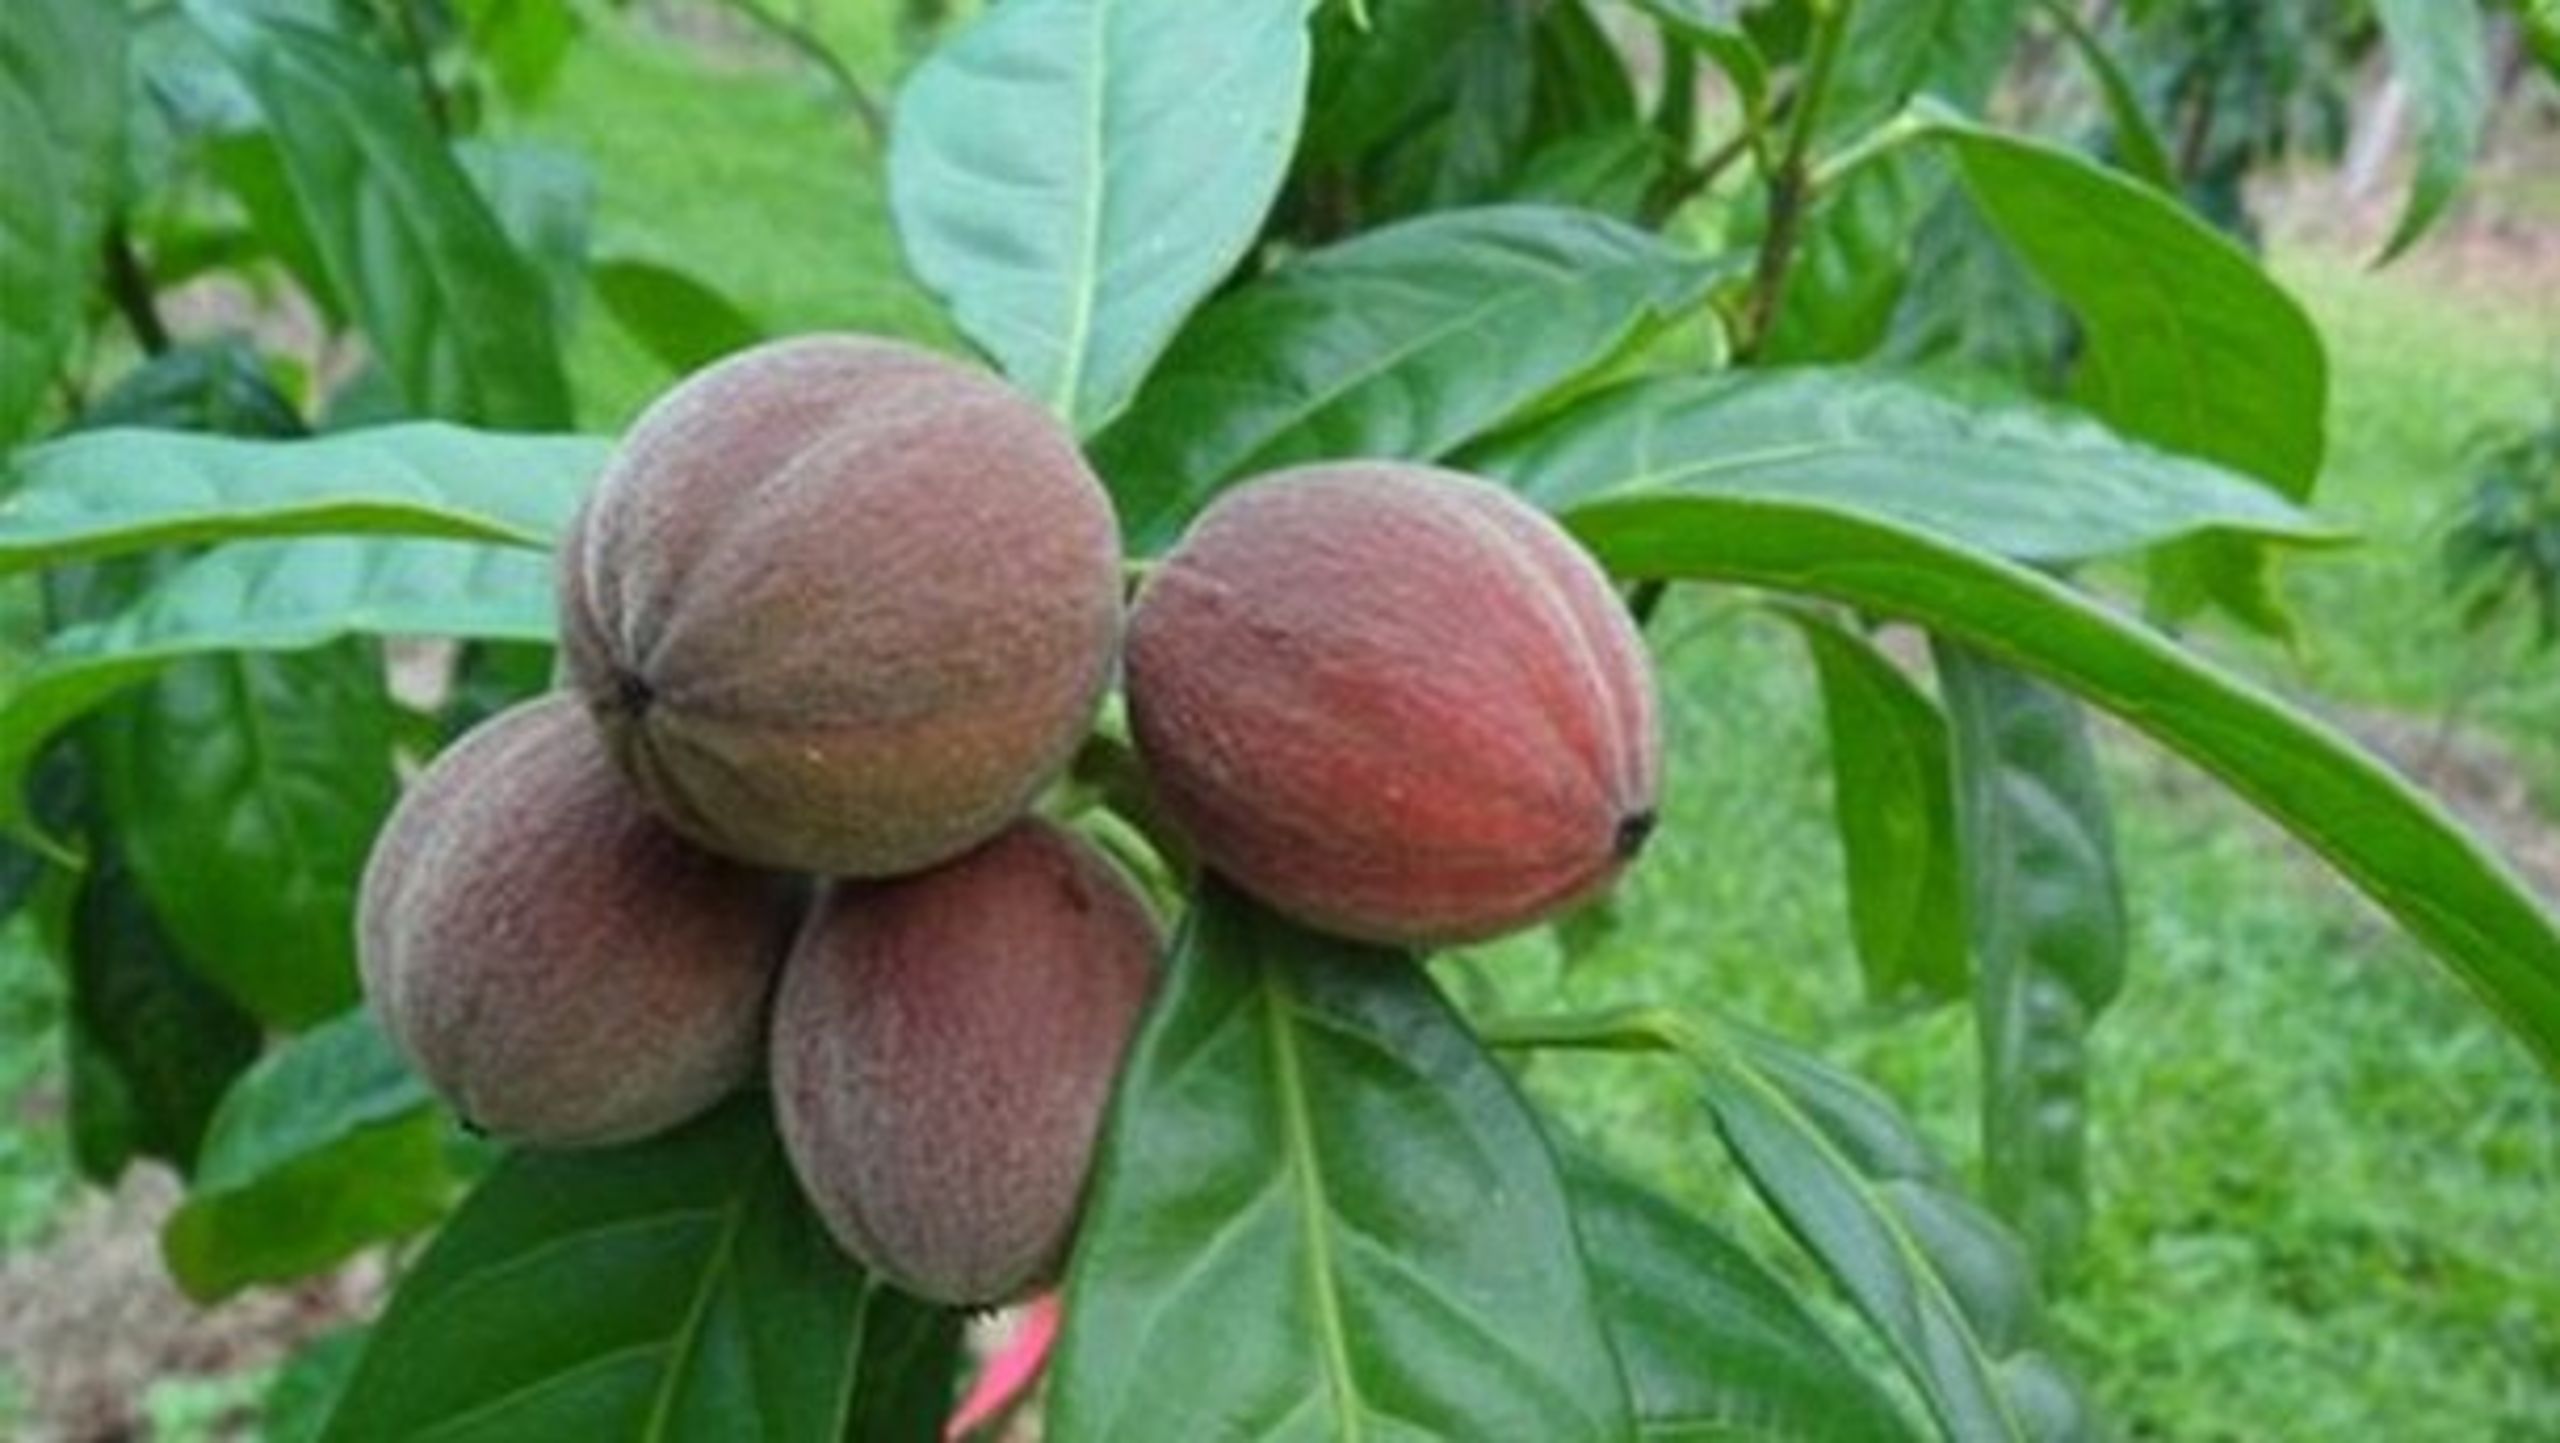 En meget populær artikel påstår, at denne frugt kan kurere kræft. Men det er der ikke videnskabeligt bevis for.